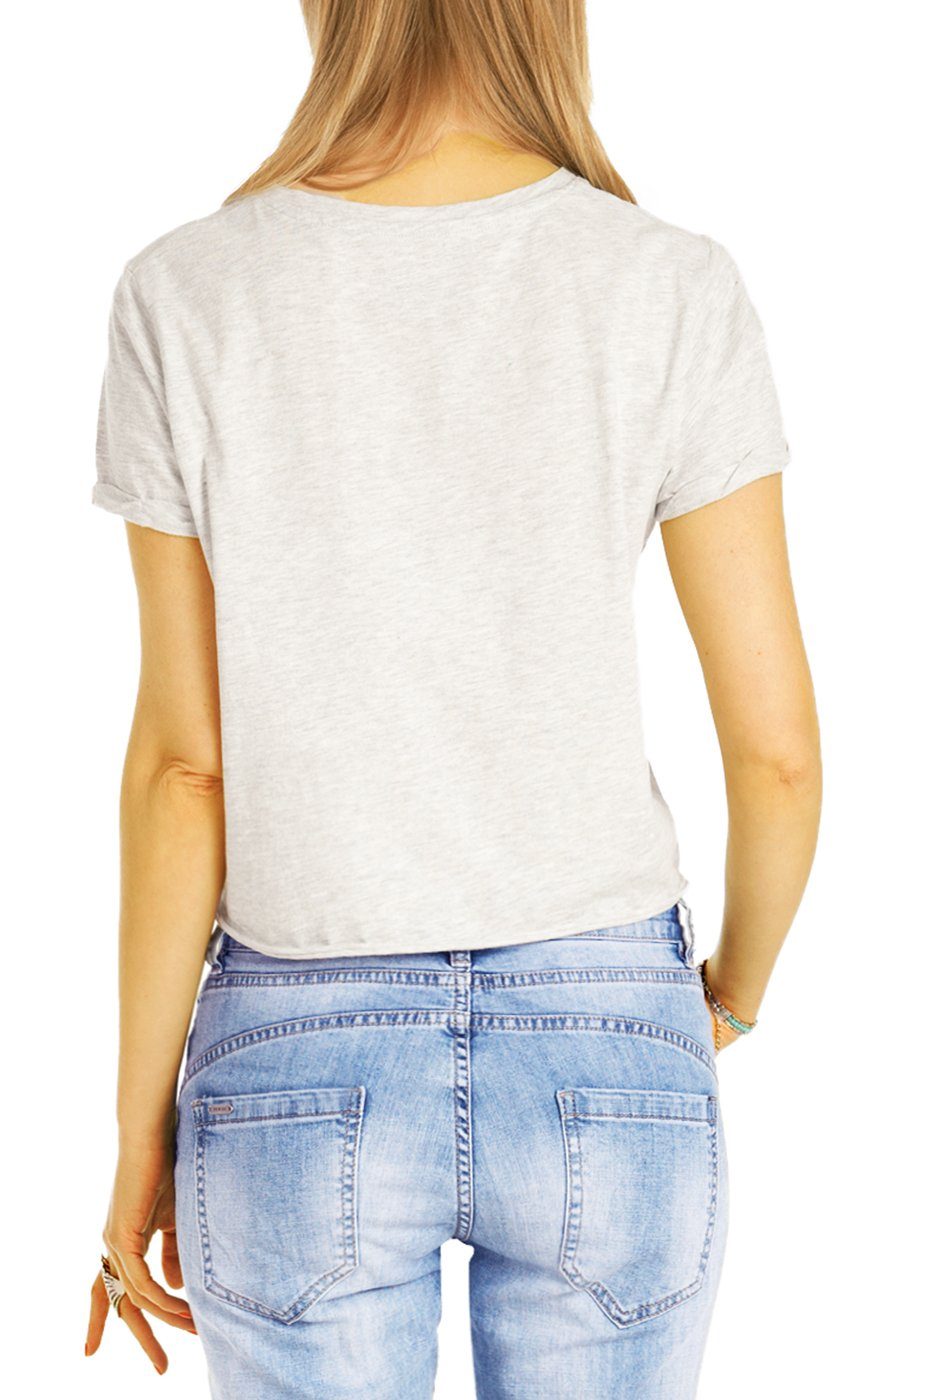 Boyfriend - weiß Stoffhose - Hose mit styled be Knopfleiste vordere Knopfleiste j30L-3 Jeans Damen Waist Medium